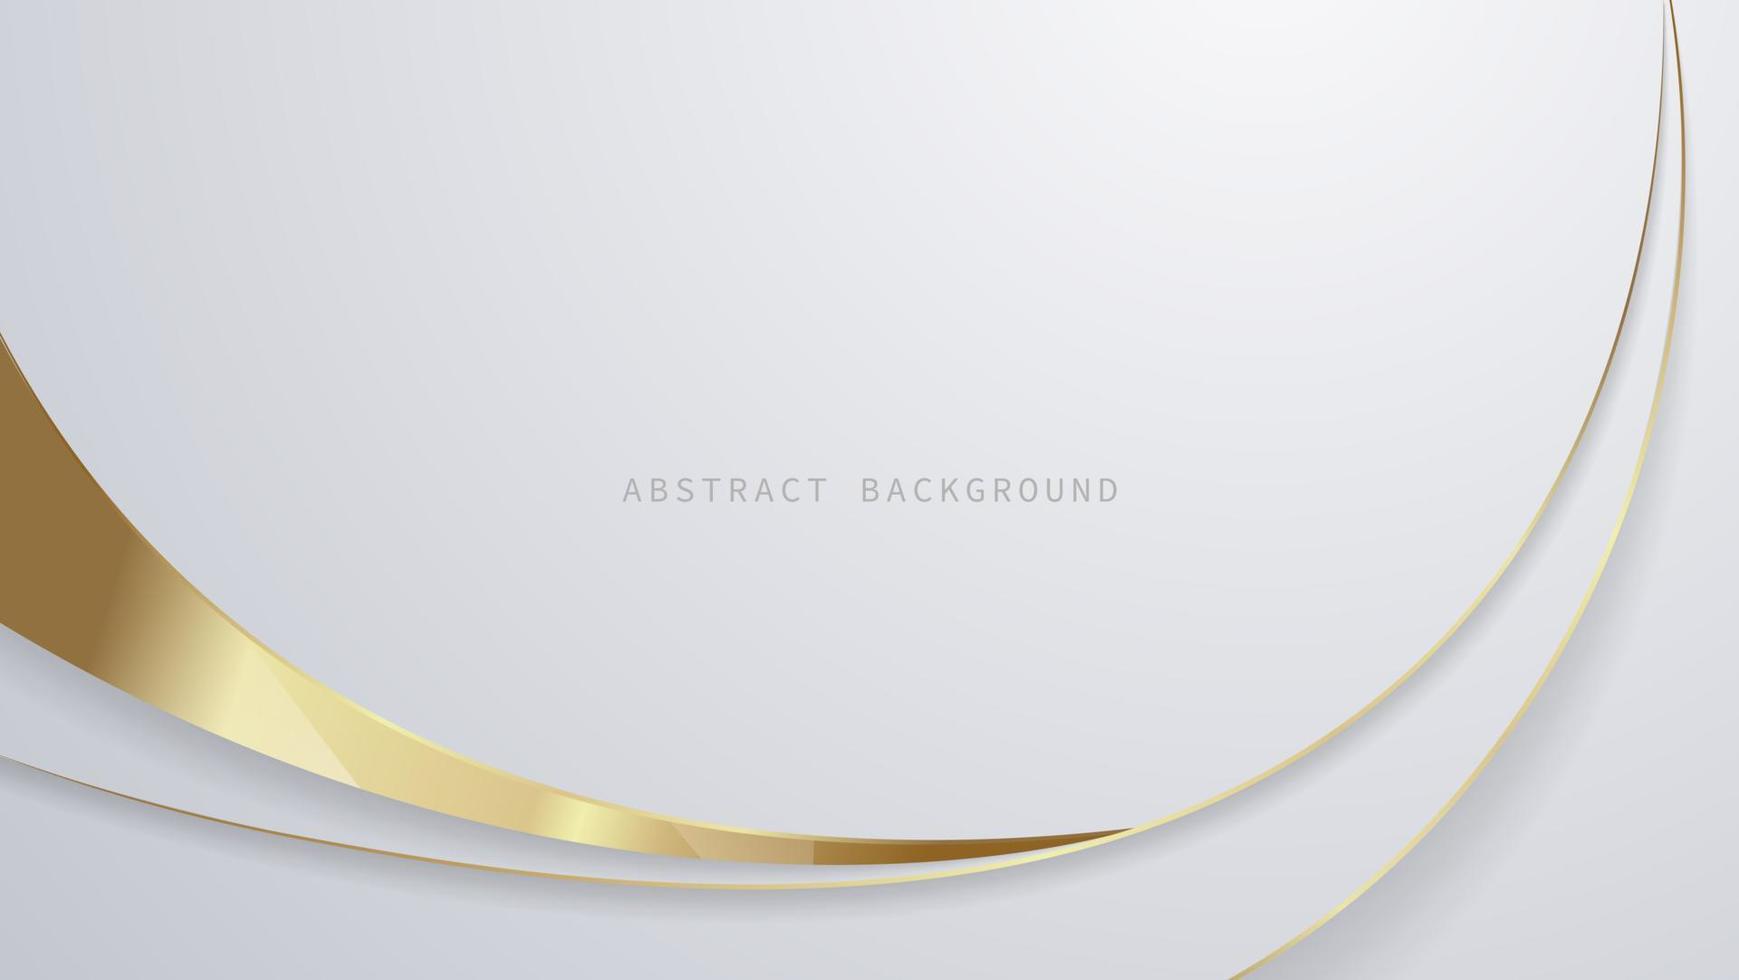 moderner luxus abstrakter hintergrund mit leuchtenden muster der goldenen linienelemente. elegante kurve geometrische formen auf weißem hintergrund. Vektorillustration für Design vektor